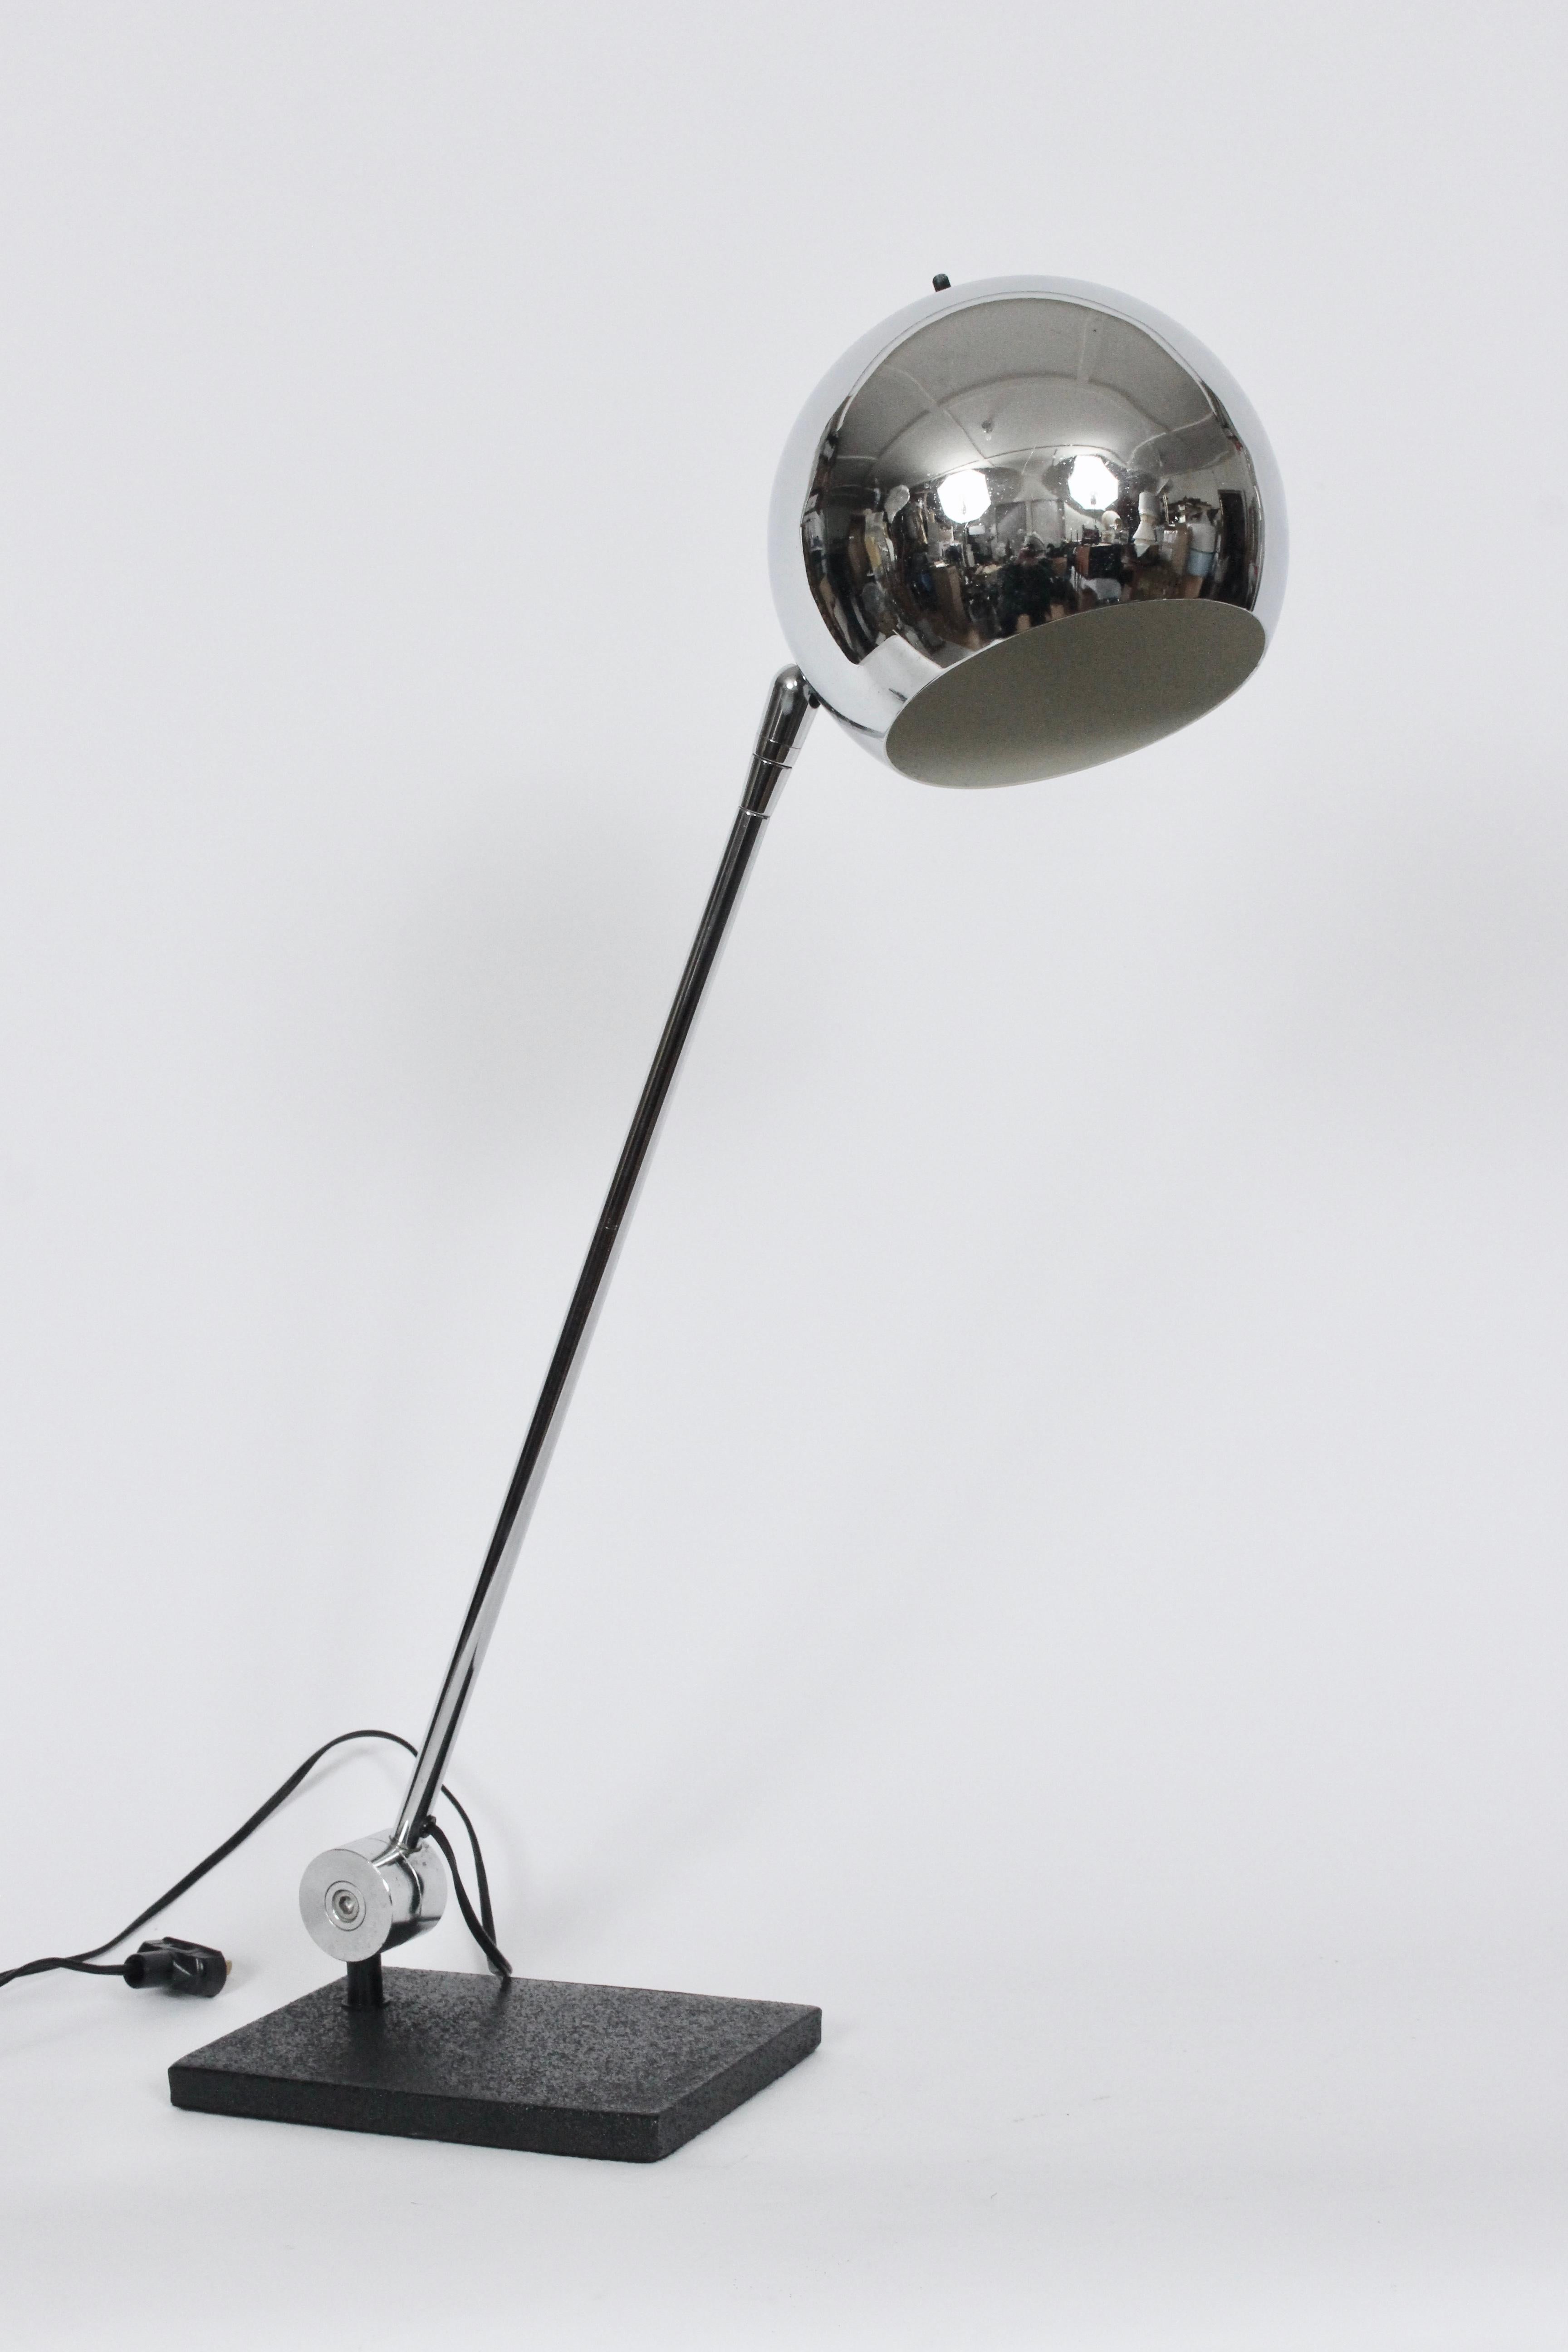 Moderne Robert Sonneman verstellbare Chromkugel Schreibtischlampe, CIRCA 1970. Mit einem schweren, schwarz emaillierten, rechteckigen Sockel (5,5 x 8) mit reflektierendem, belüftetem, beweglichem (7D) Chromkugelschirm und einem weiß emaillierten